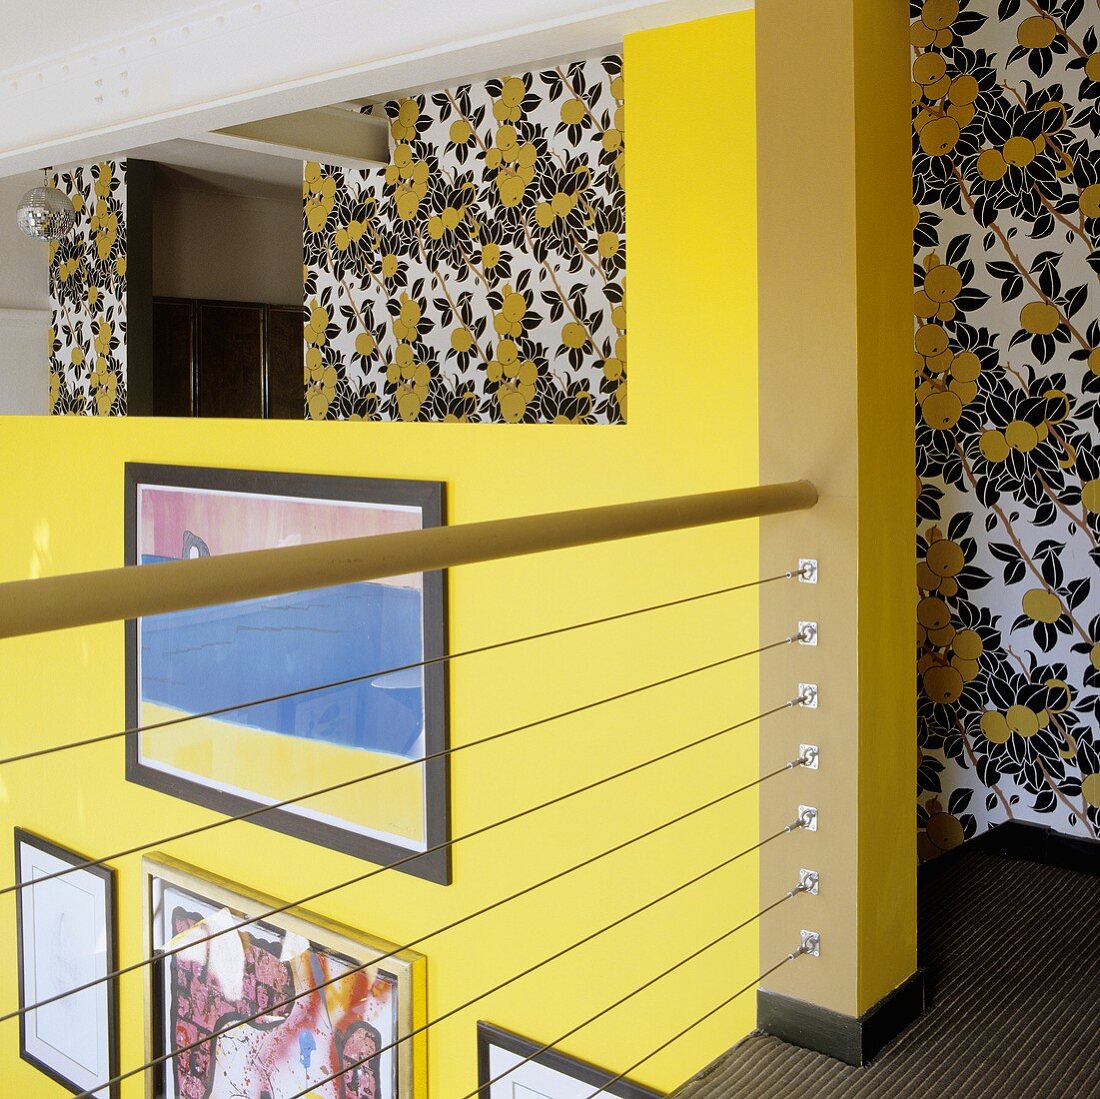 Galerie mit Blick auf gelbe Wand und Tapete mit floralem Muster